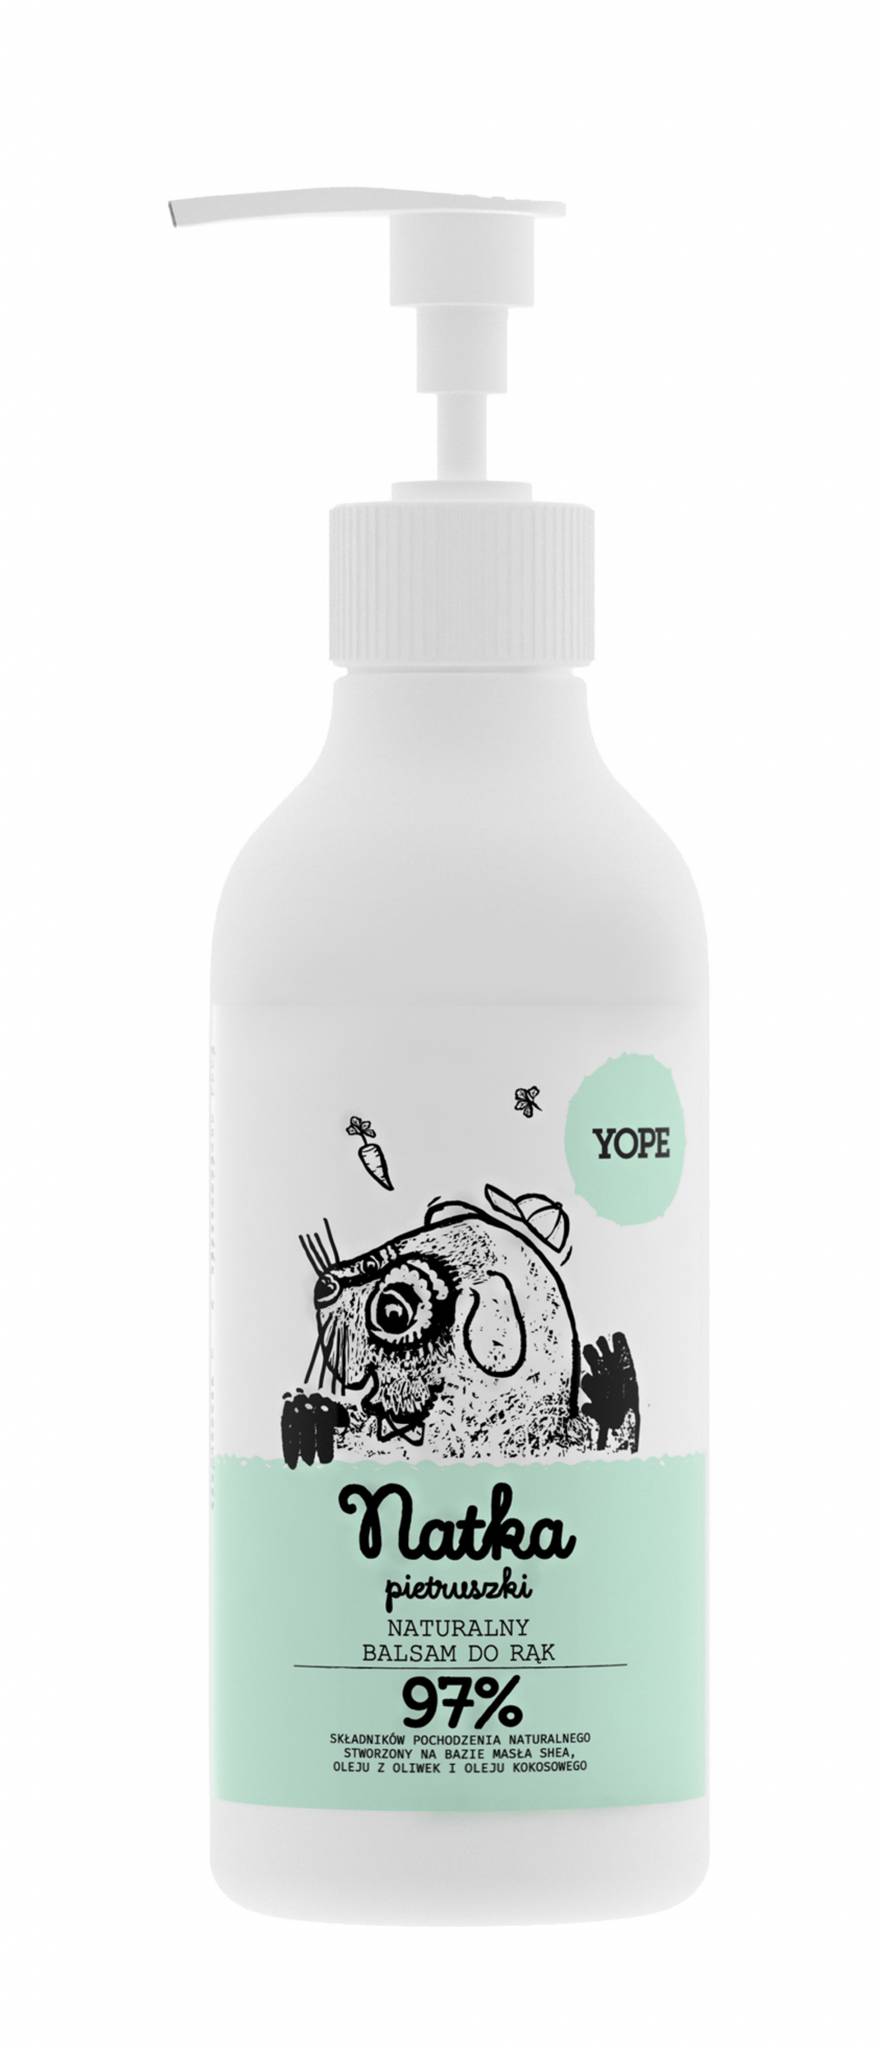  Yope (300 ml/29,99 zł)